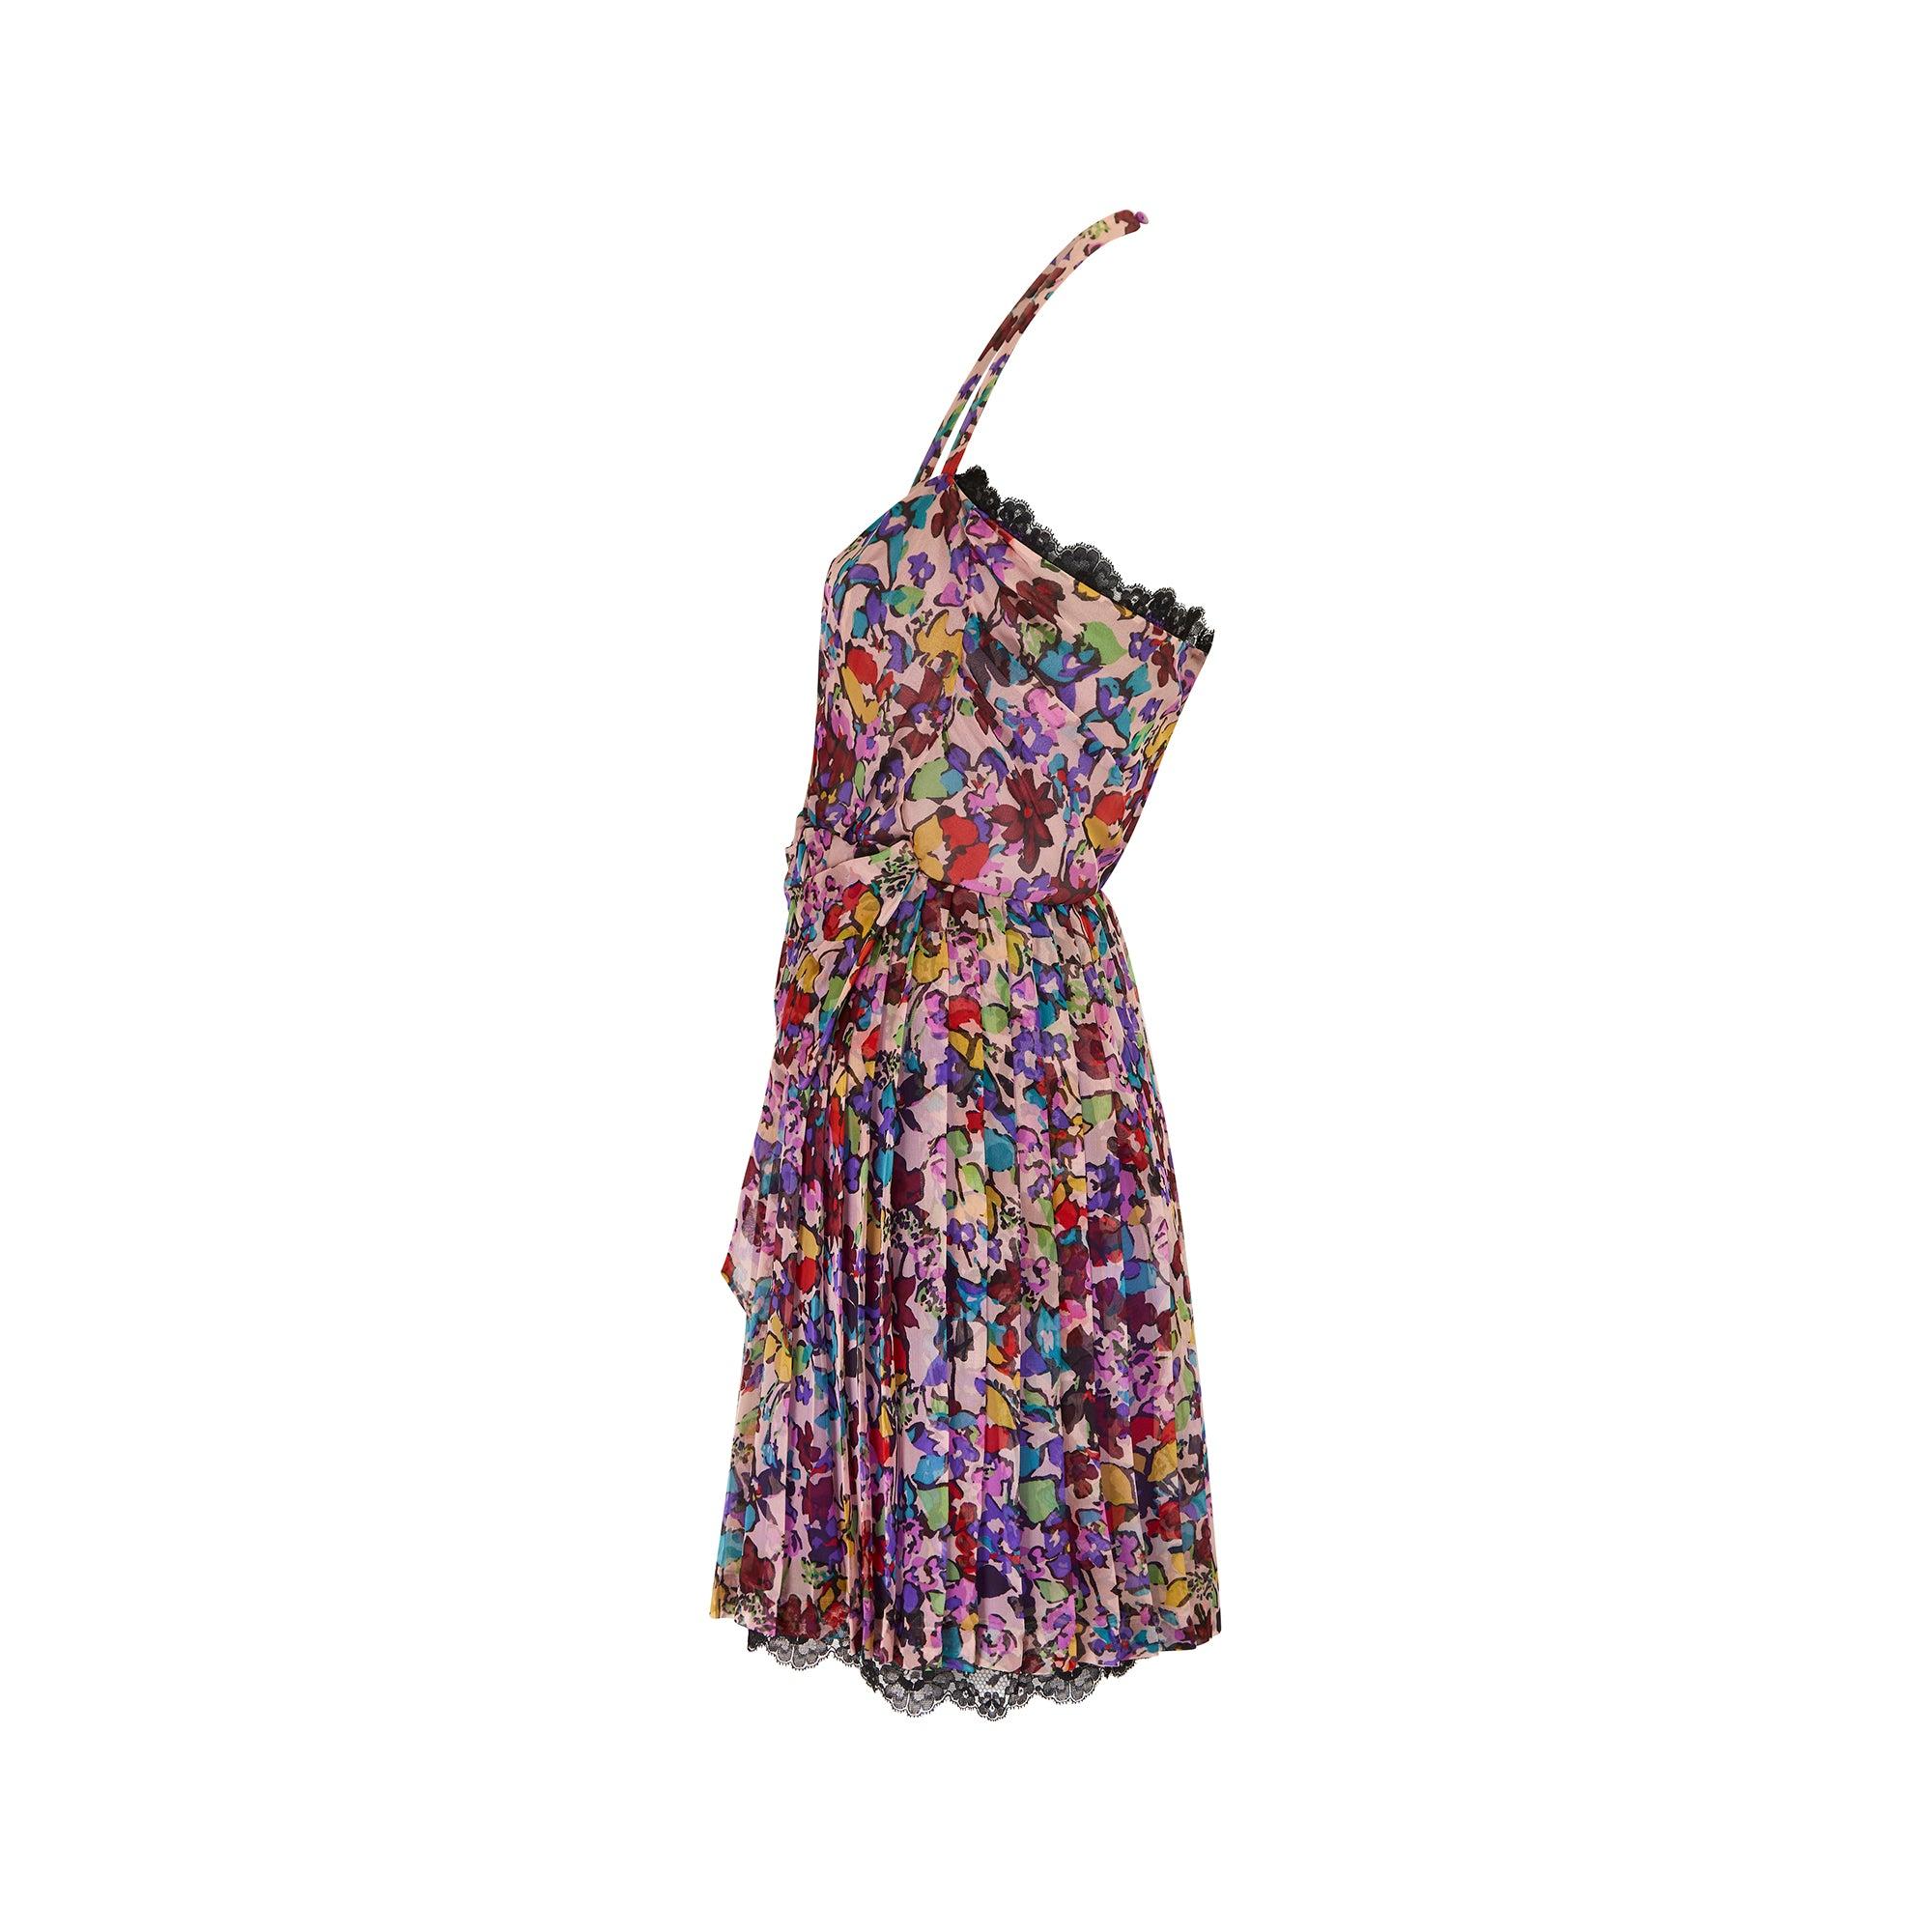 Apparue en tant que look 22 sur le défilé du printemps 2010, cette mini-robe en soie florale représente la marque Christian Dior dans ce qu'elle a de plus décontracté et de plus ludique. Il s'agit de l'un des derniers défilés de la maison sous la